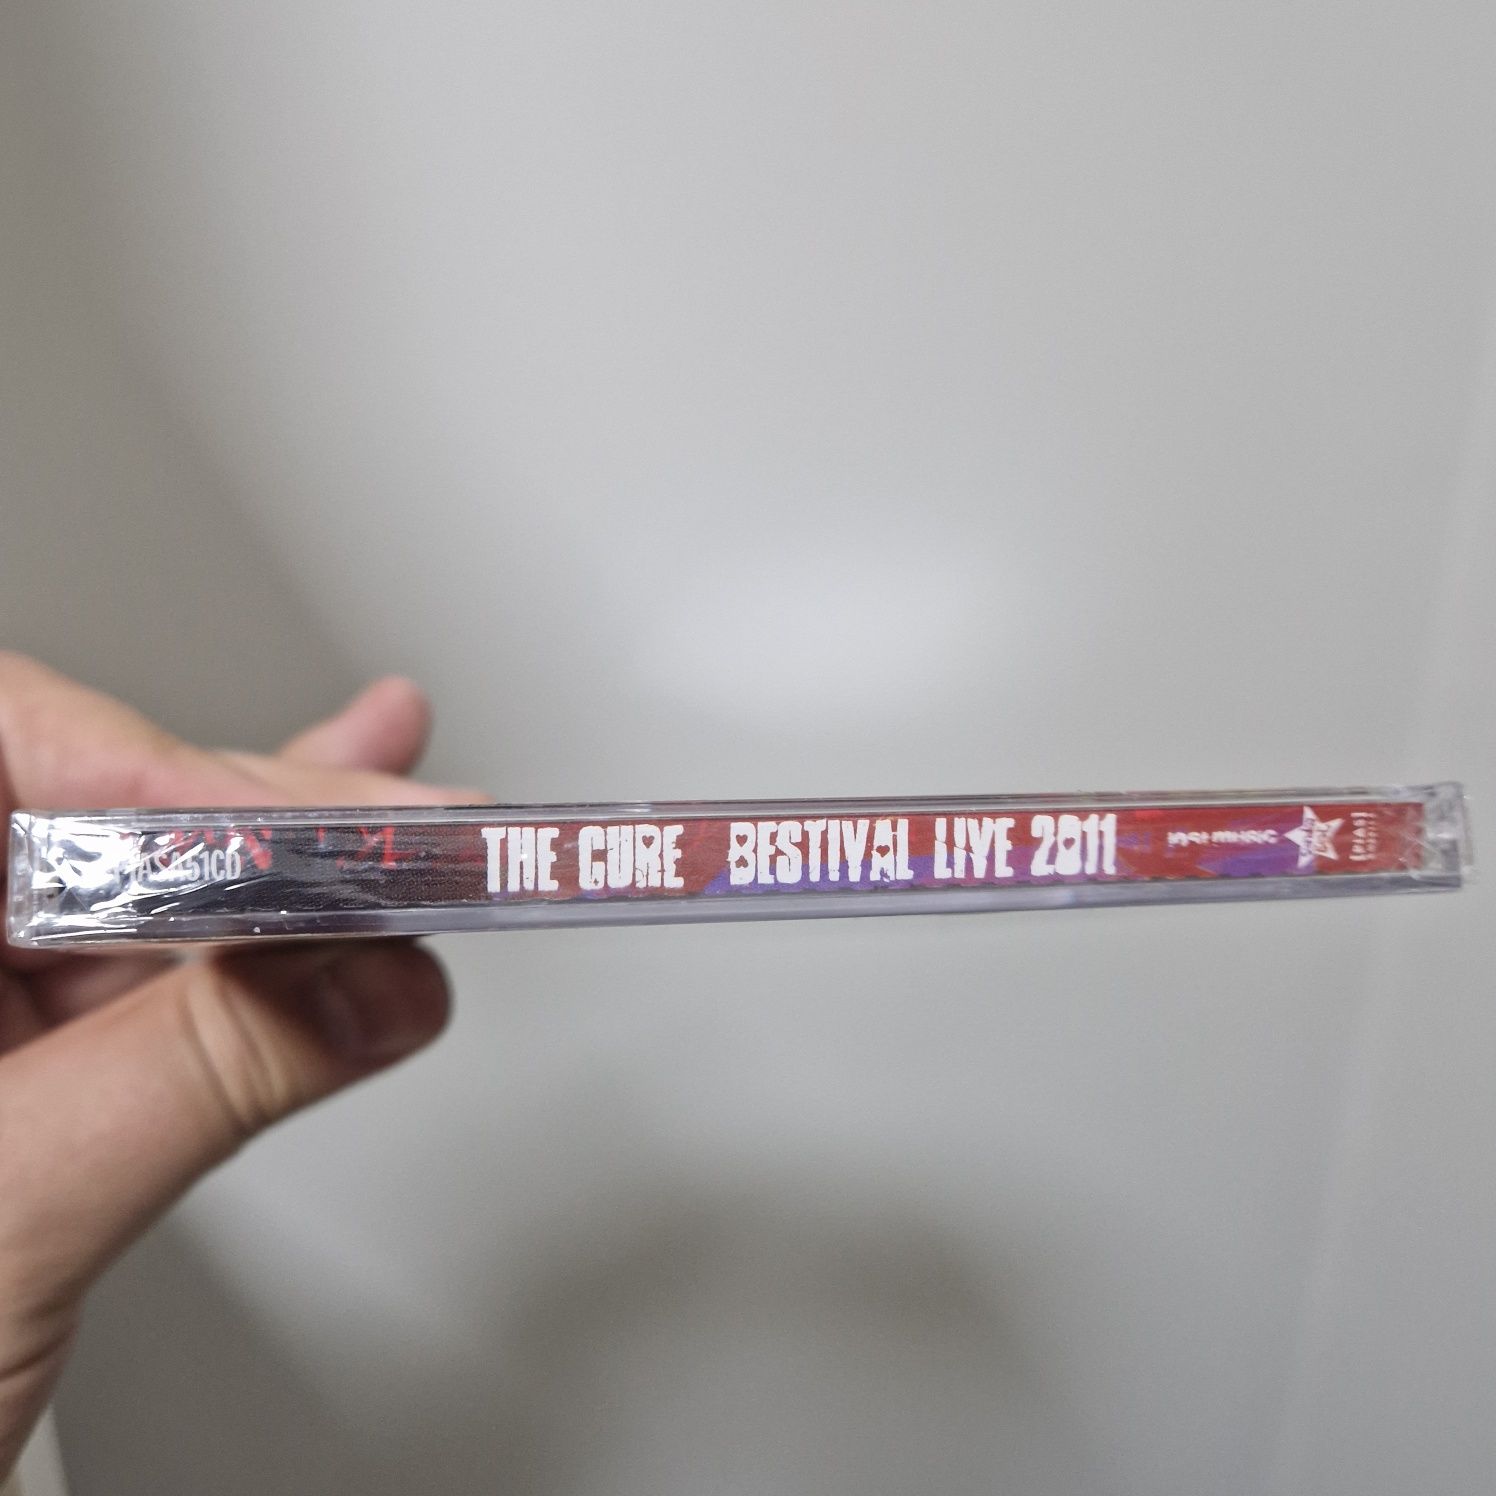 The Cure - Bestival Live 2011 -  2 CDs - Artigo Novo ainda no plástico